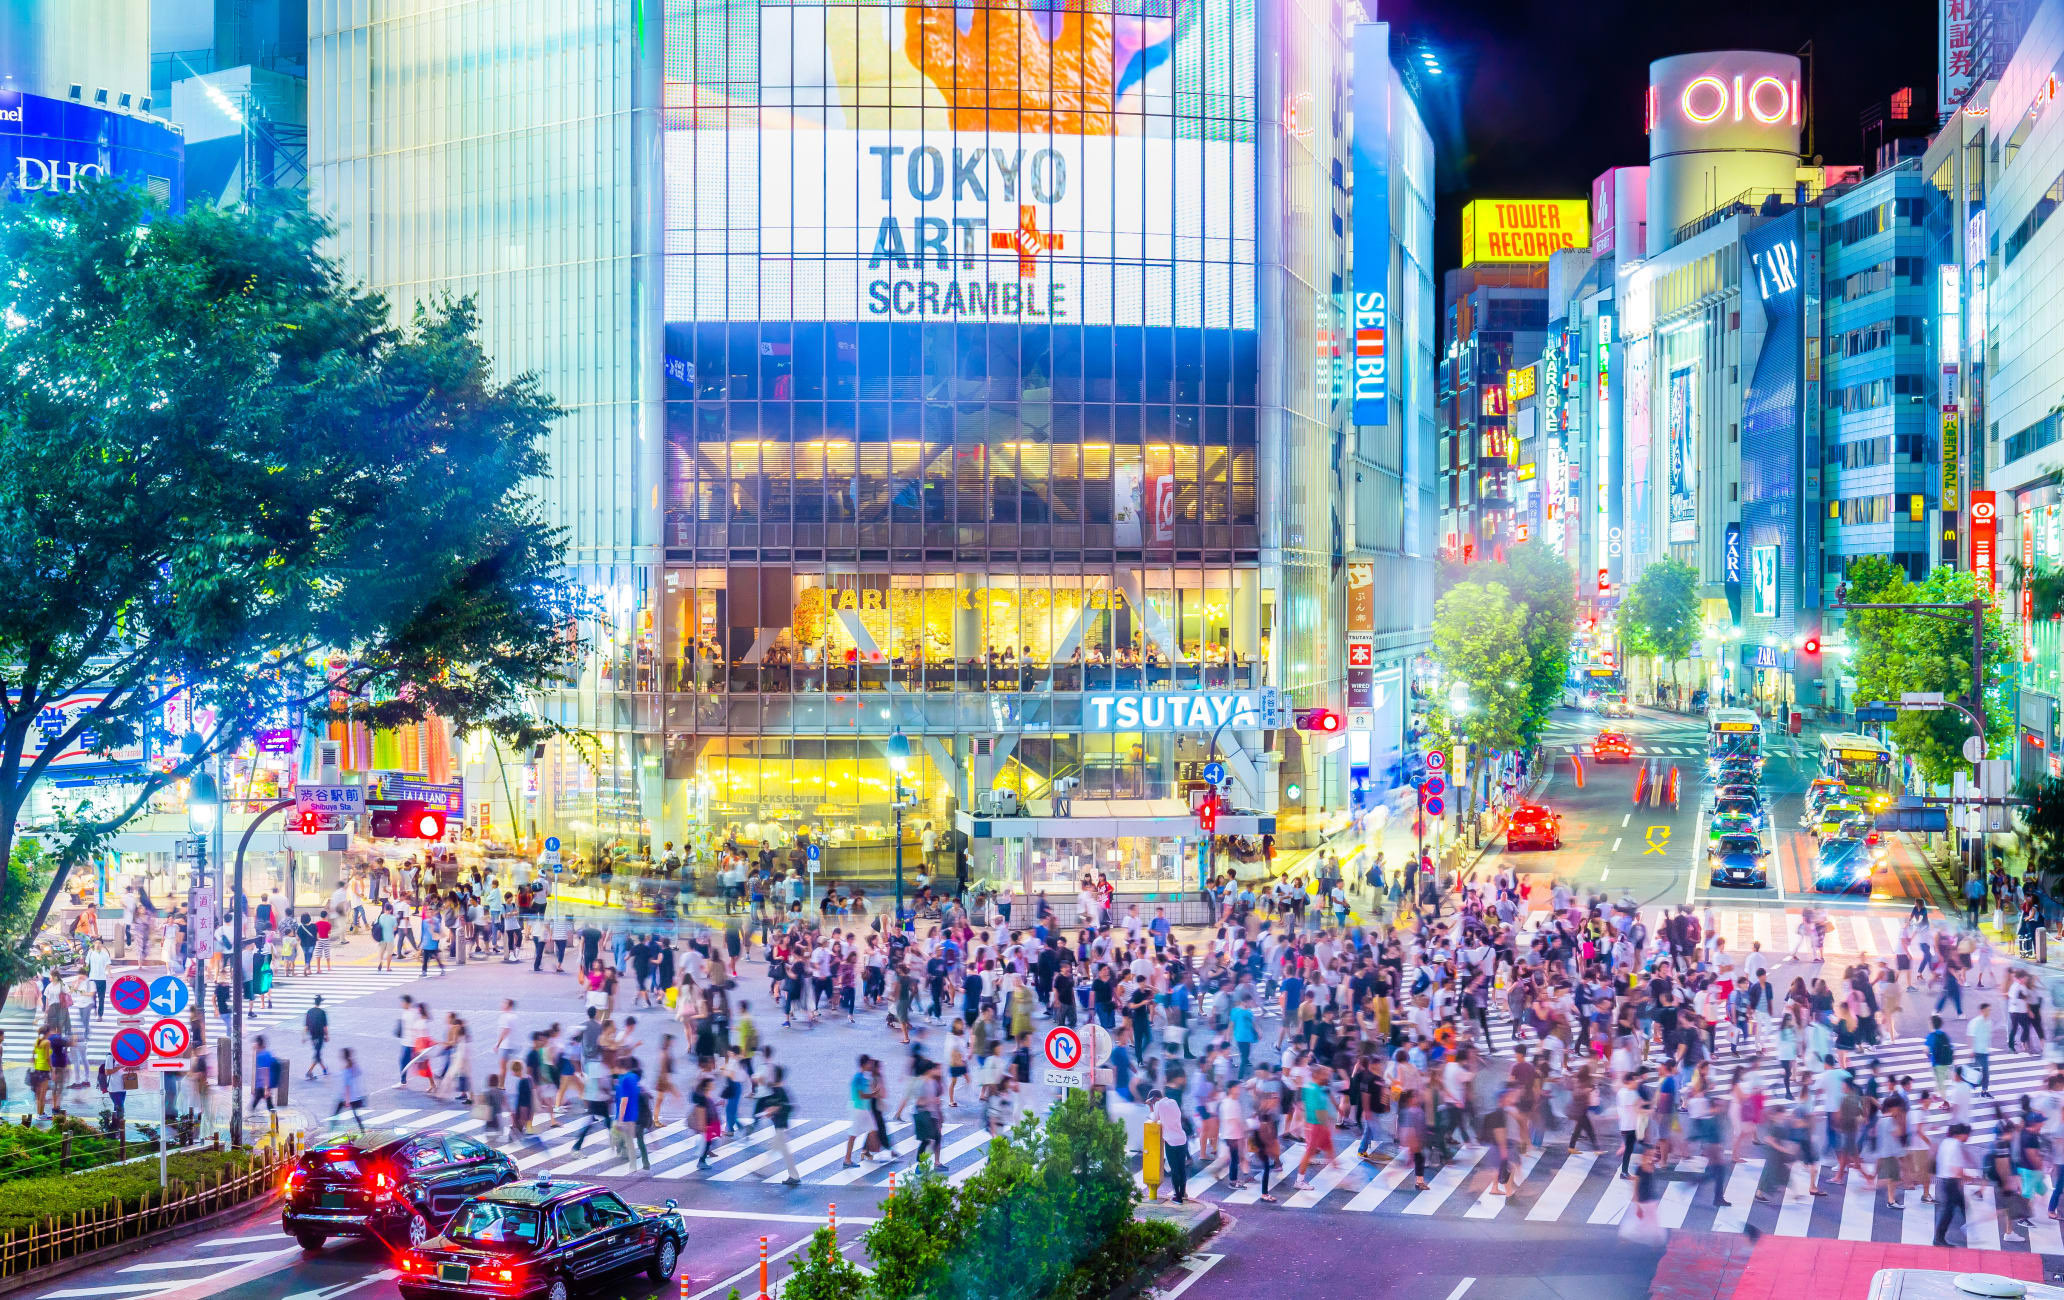 Tour du lịch 4 ngày 3 đêm tại Nhật Bản: Trải nghiệm giao lộ Shibuya như trong các bộ phim nổi tiếng